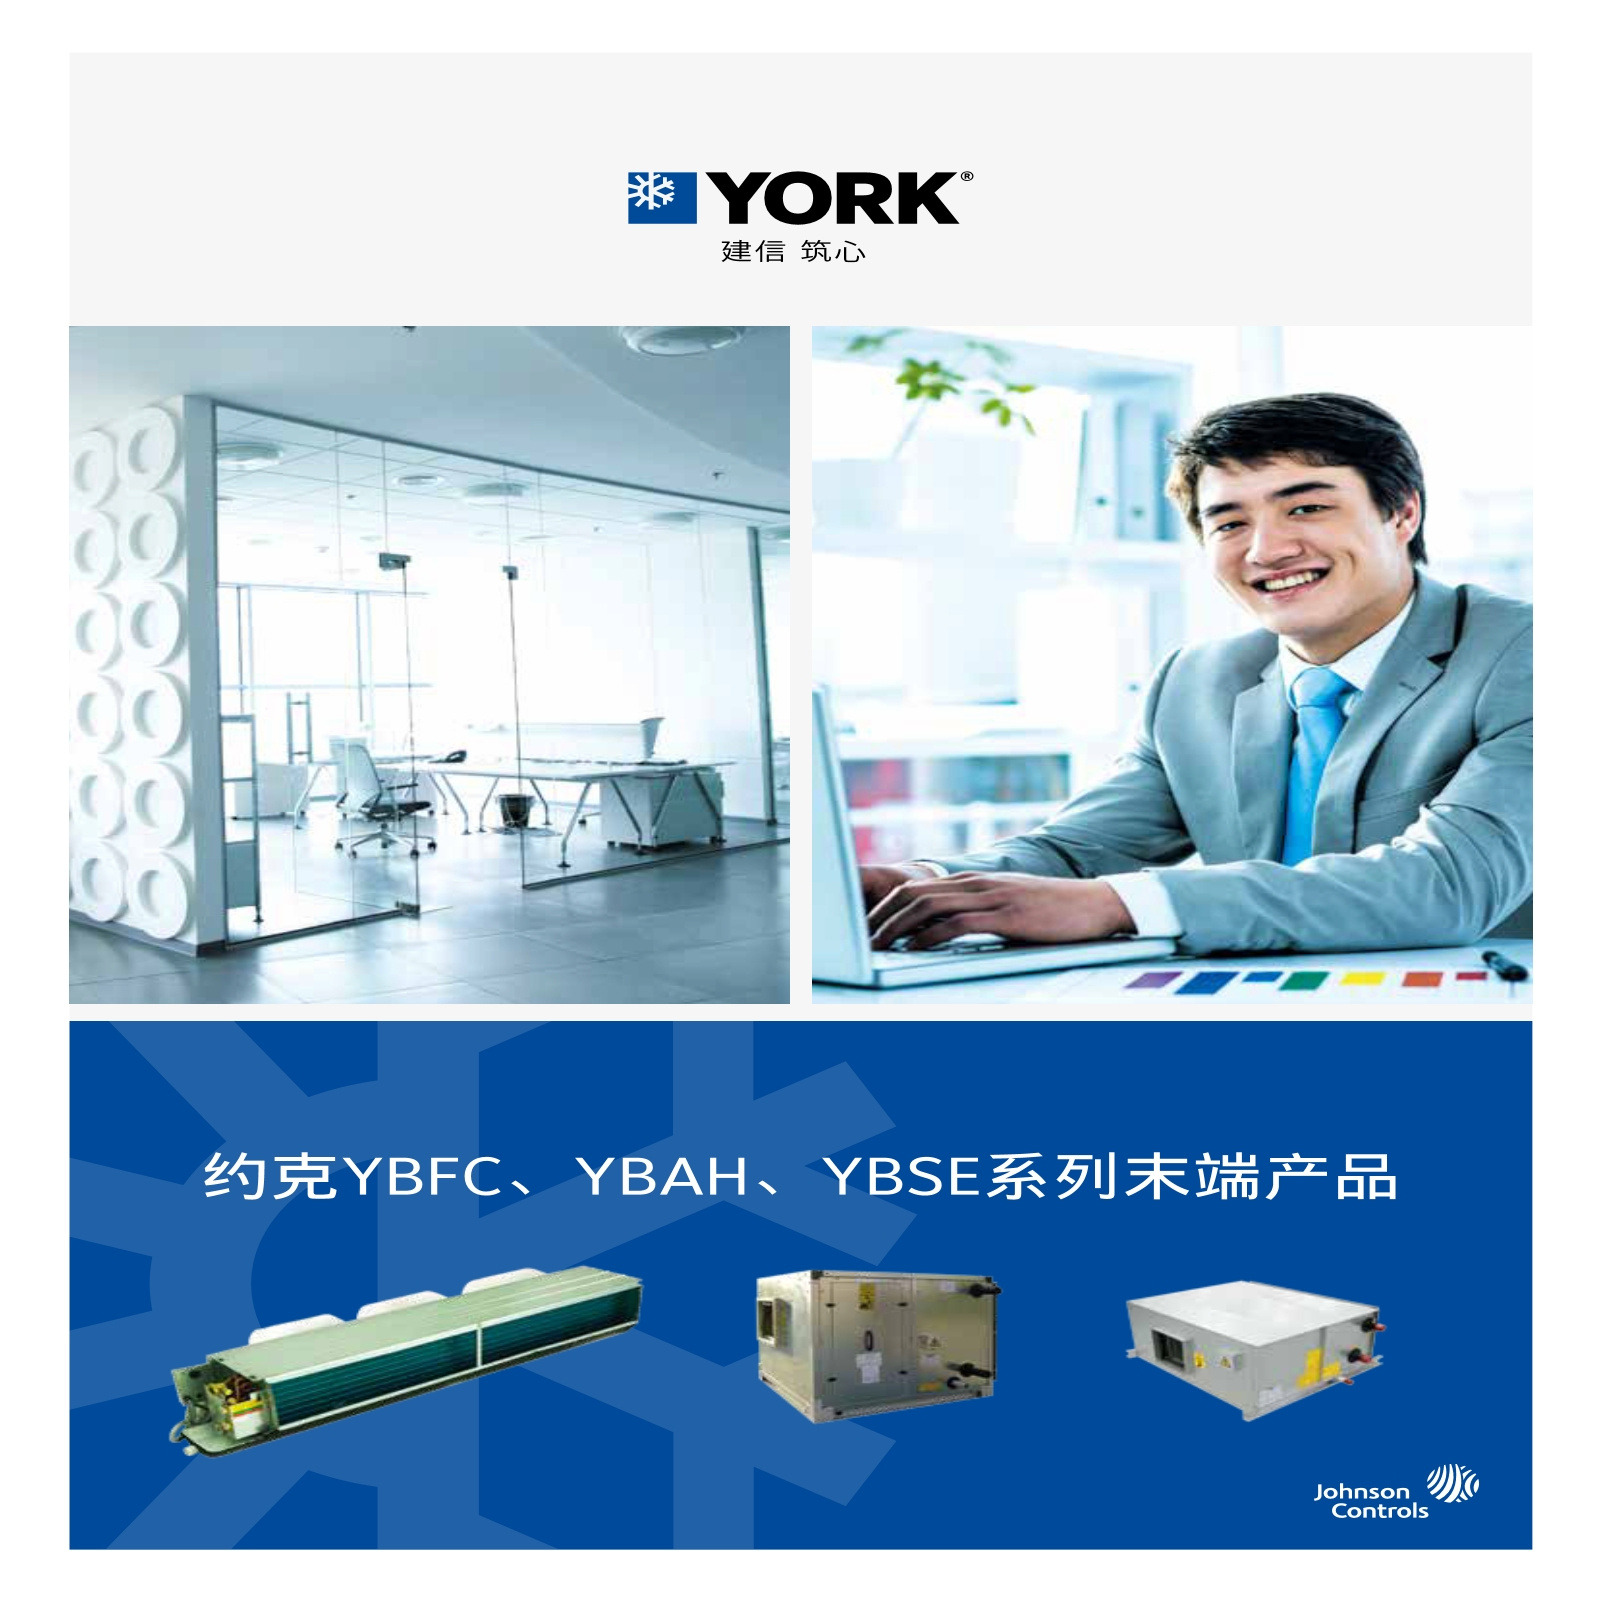 约克YBFC,YBAH,YBSE系列末端产品